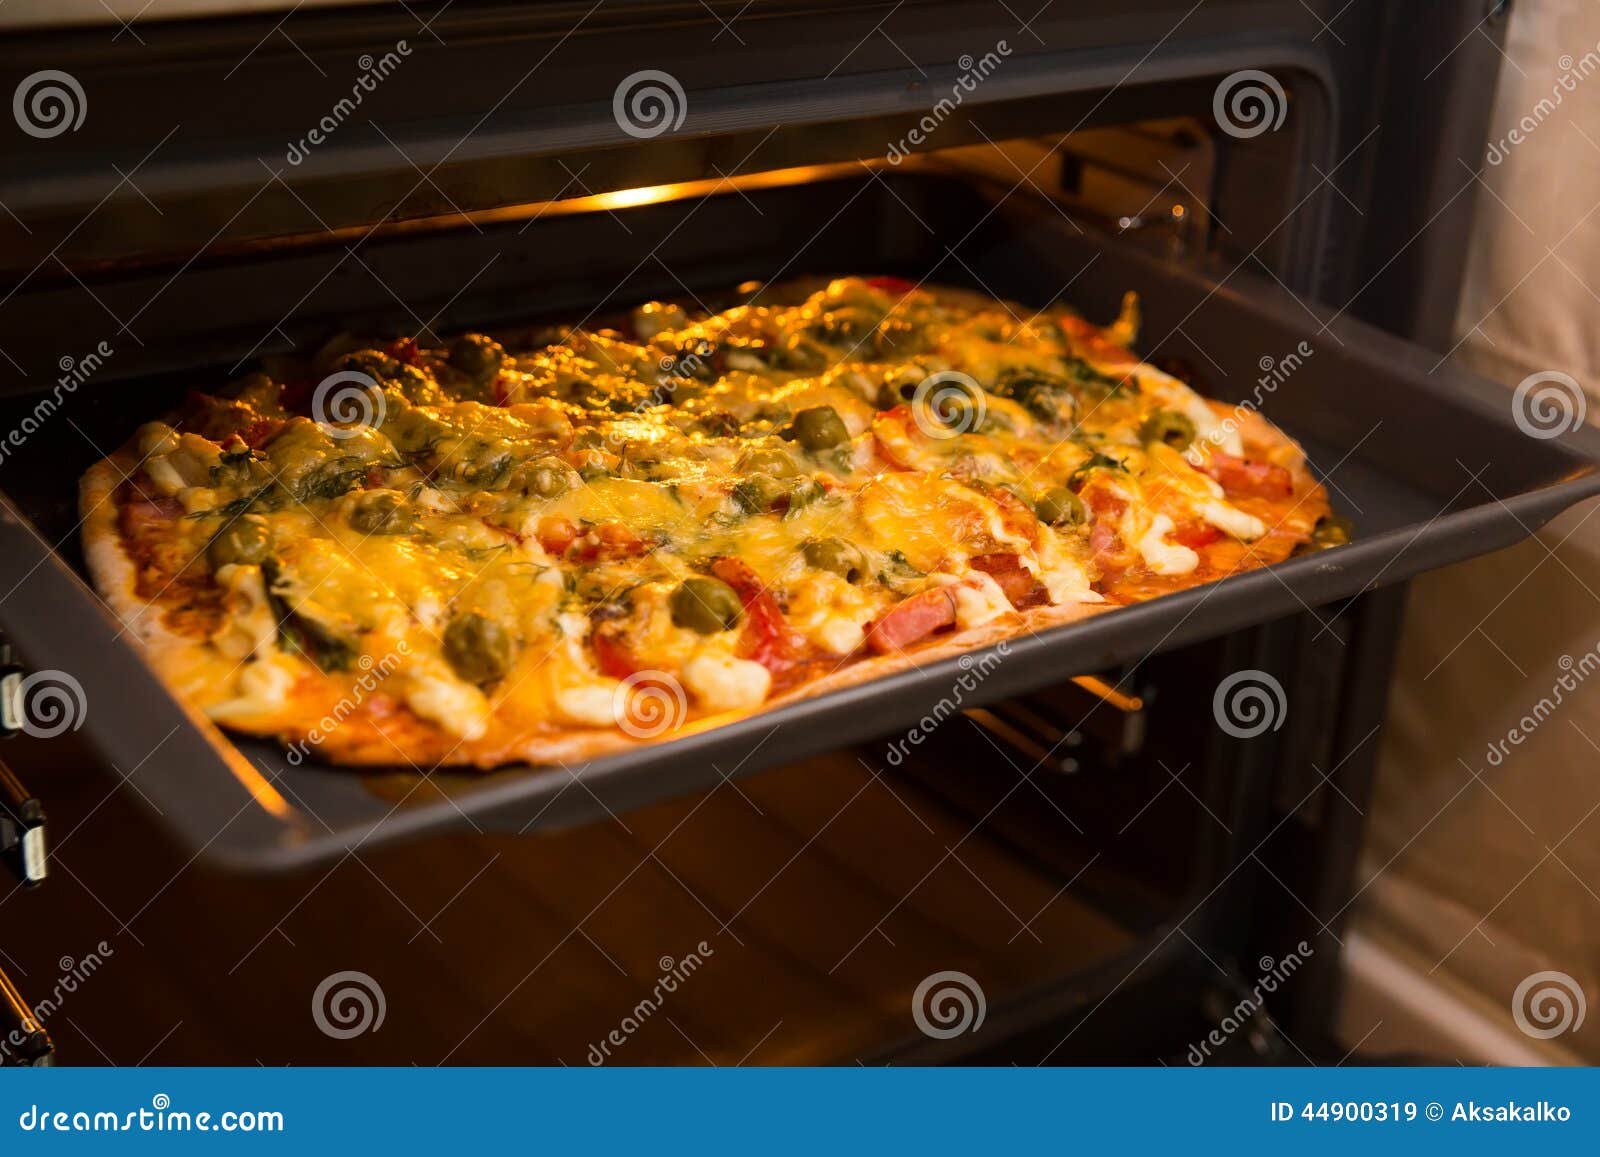 ютуб пицца в духовке фото 18